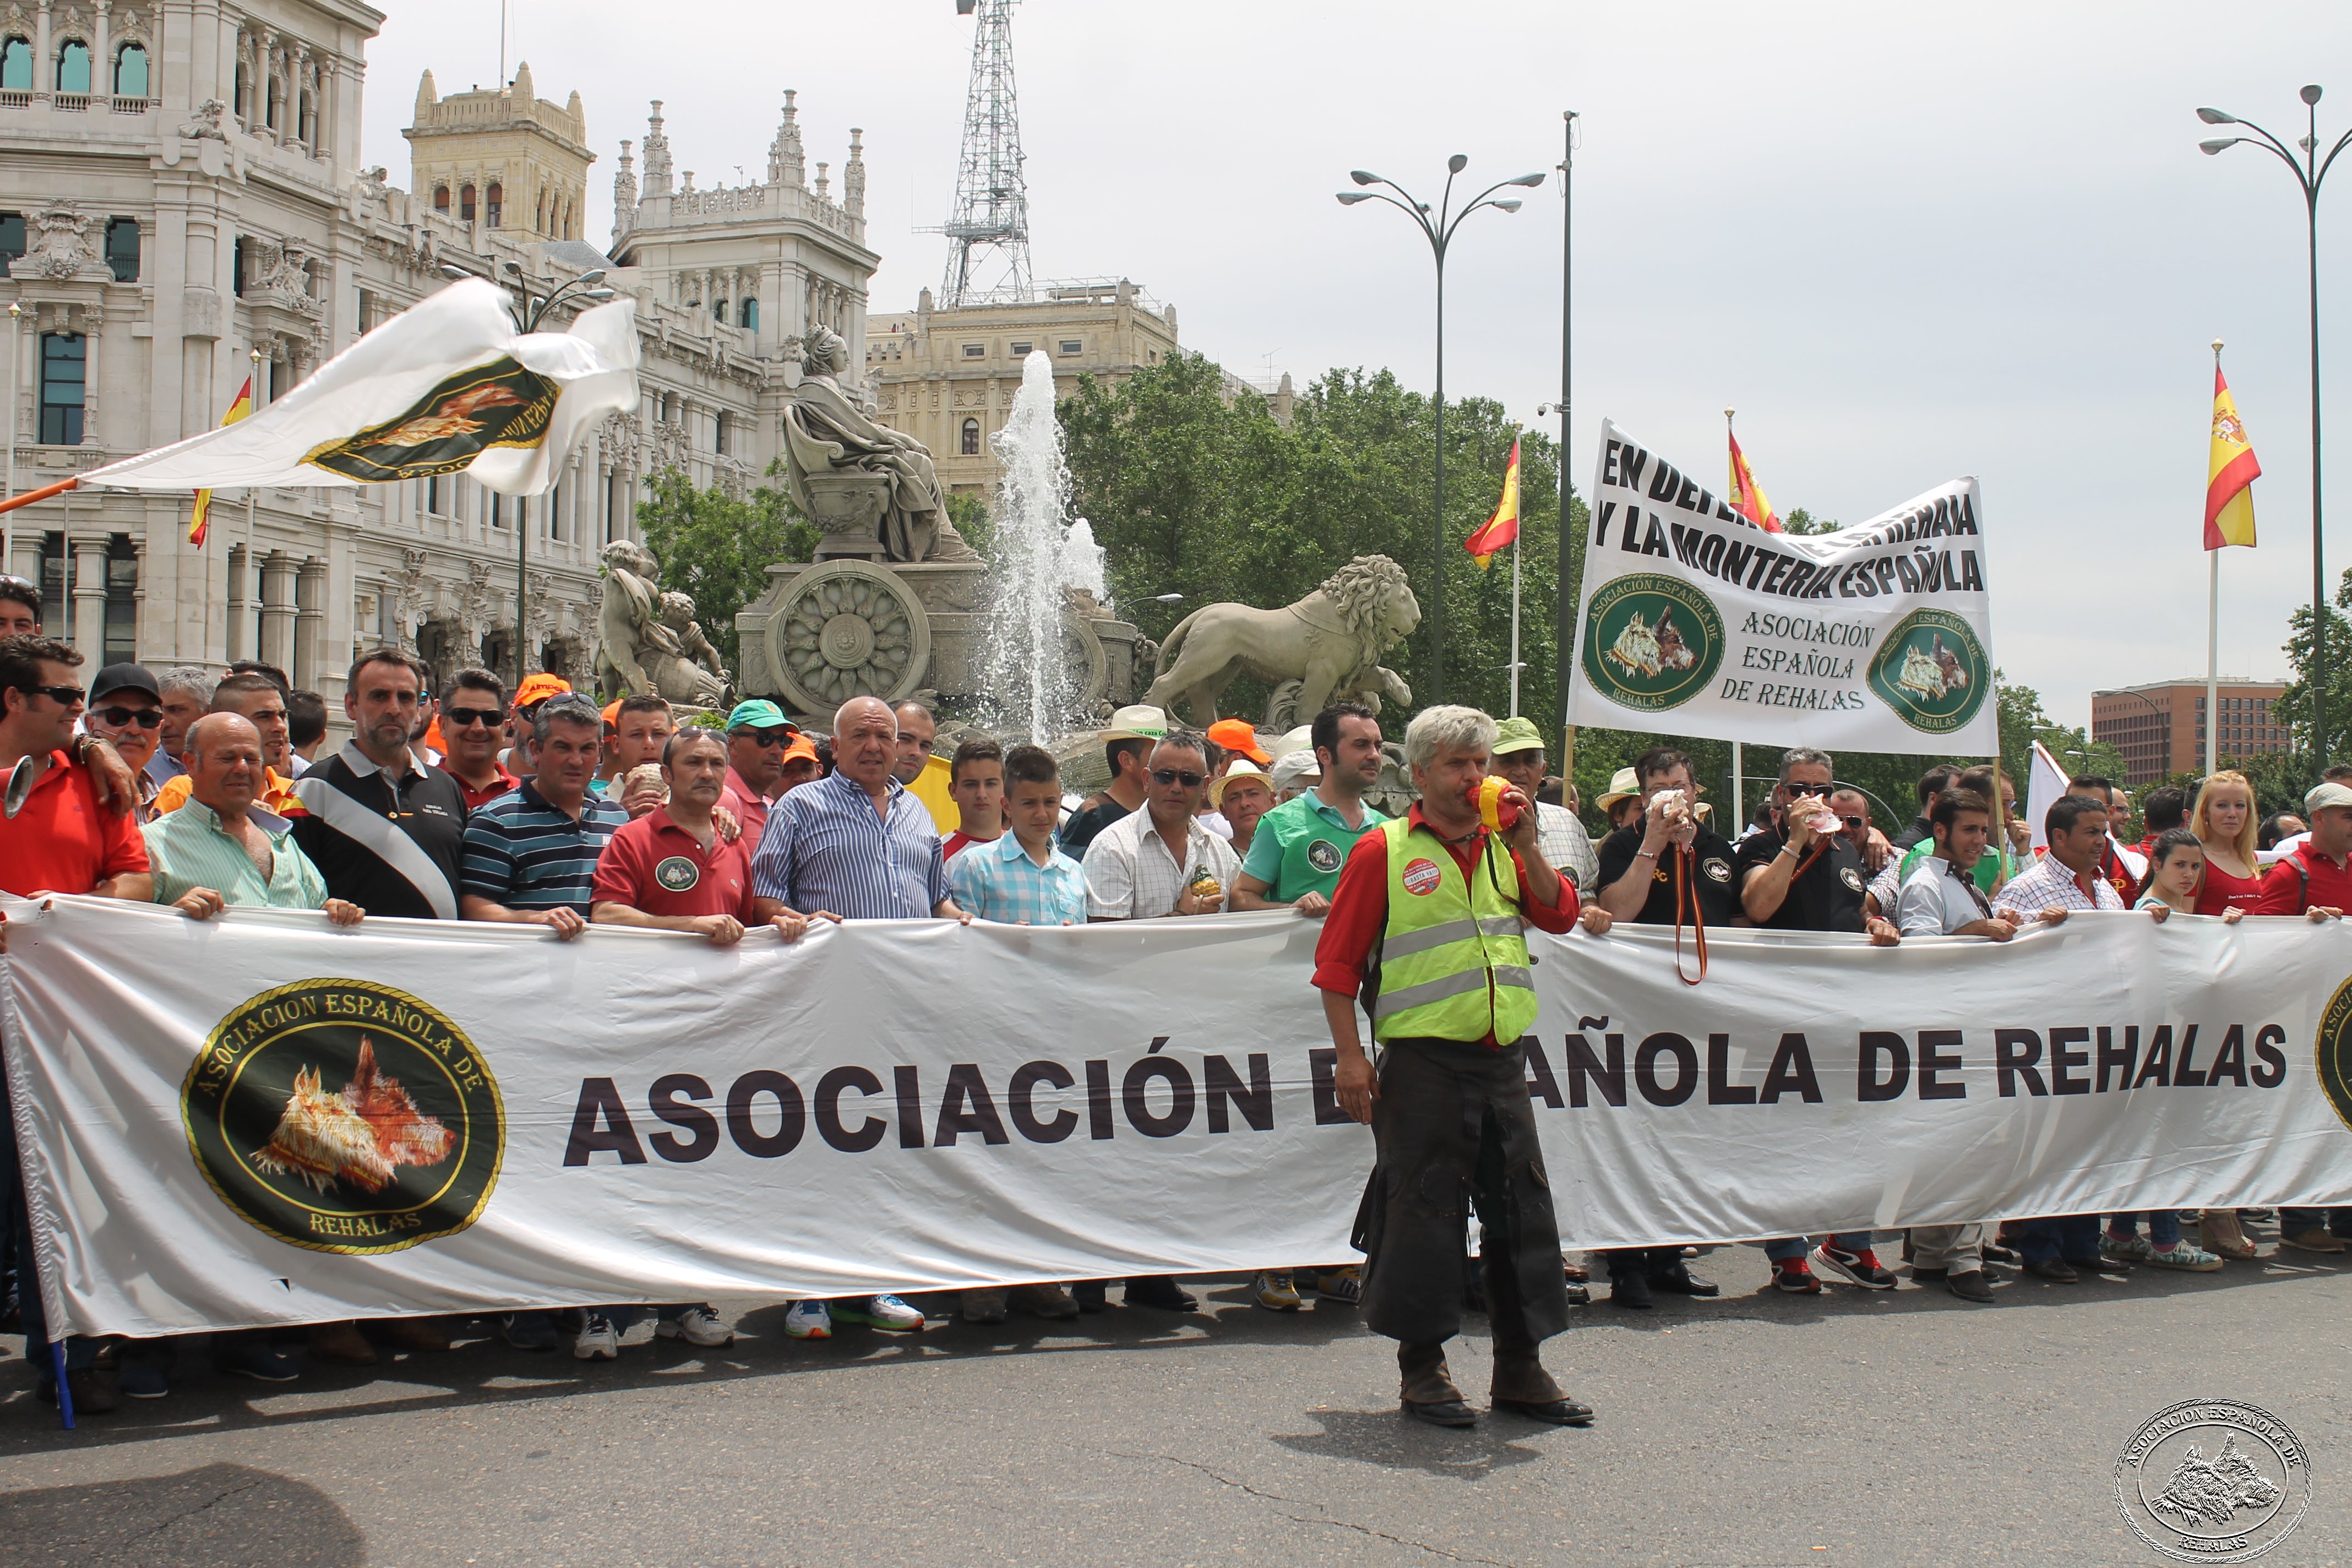 La Asociación Española de Rehalas apoya la concentración del 13 de marzo